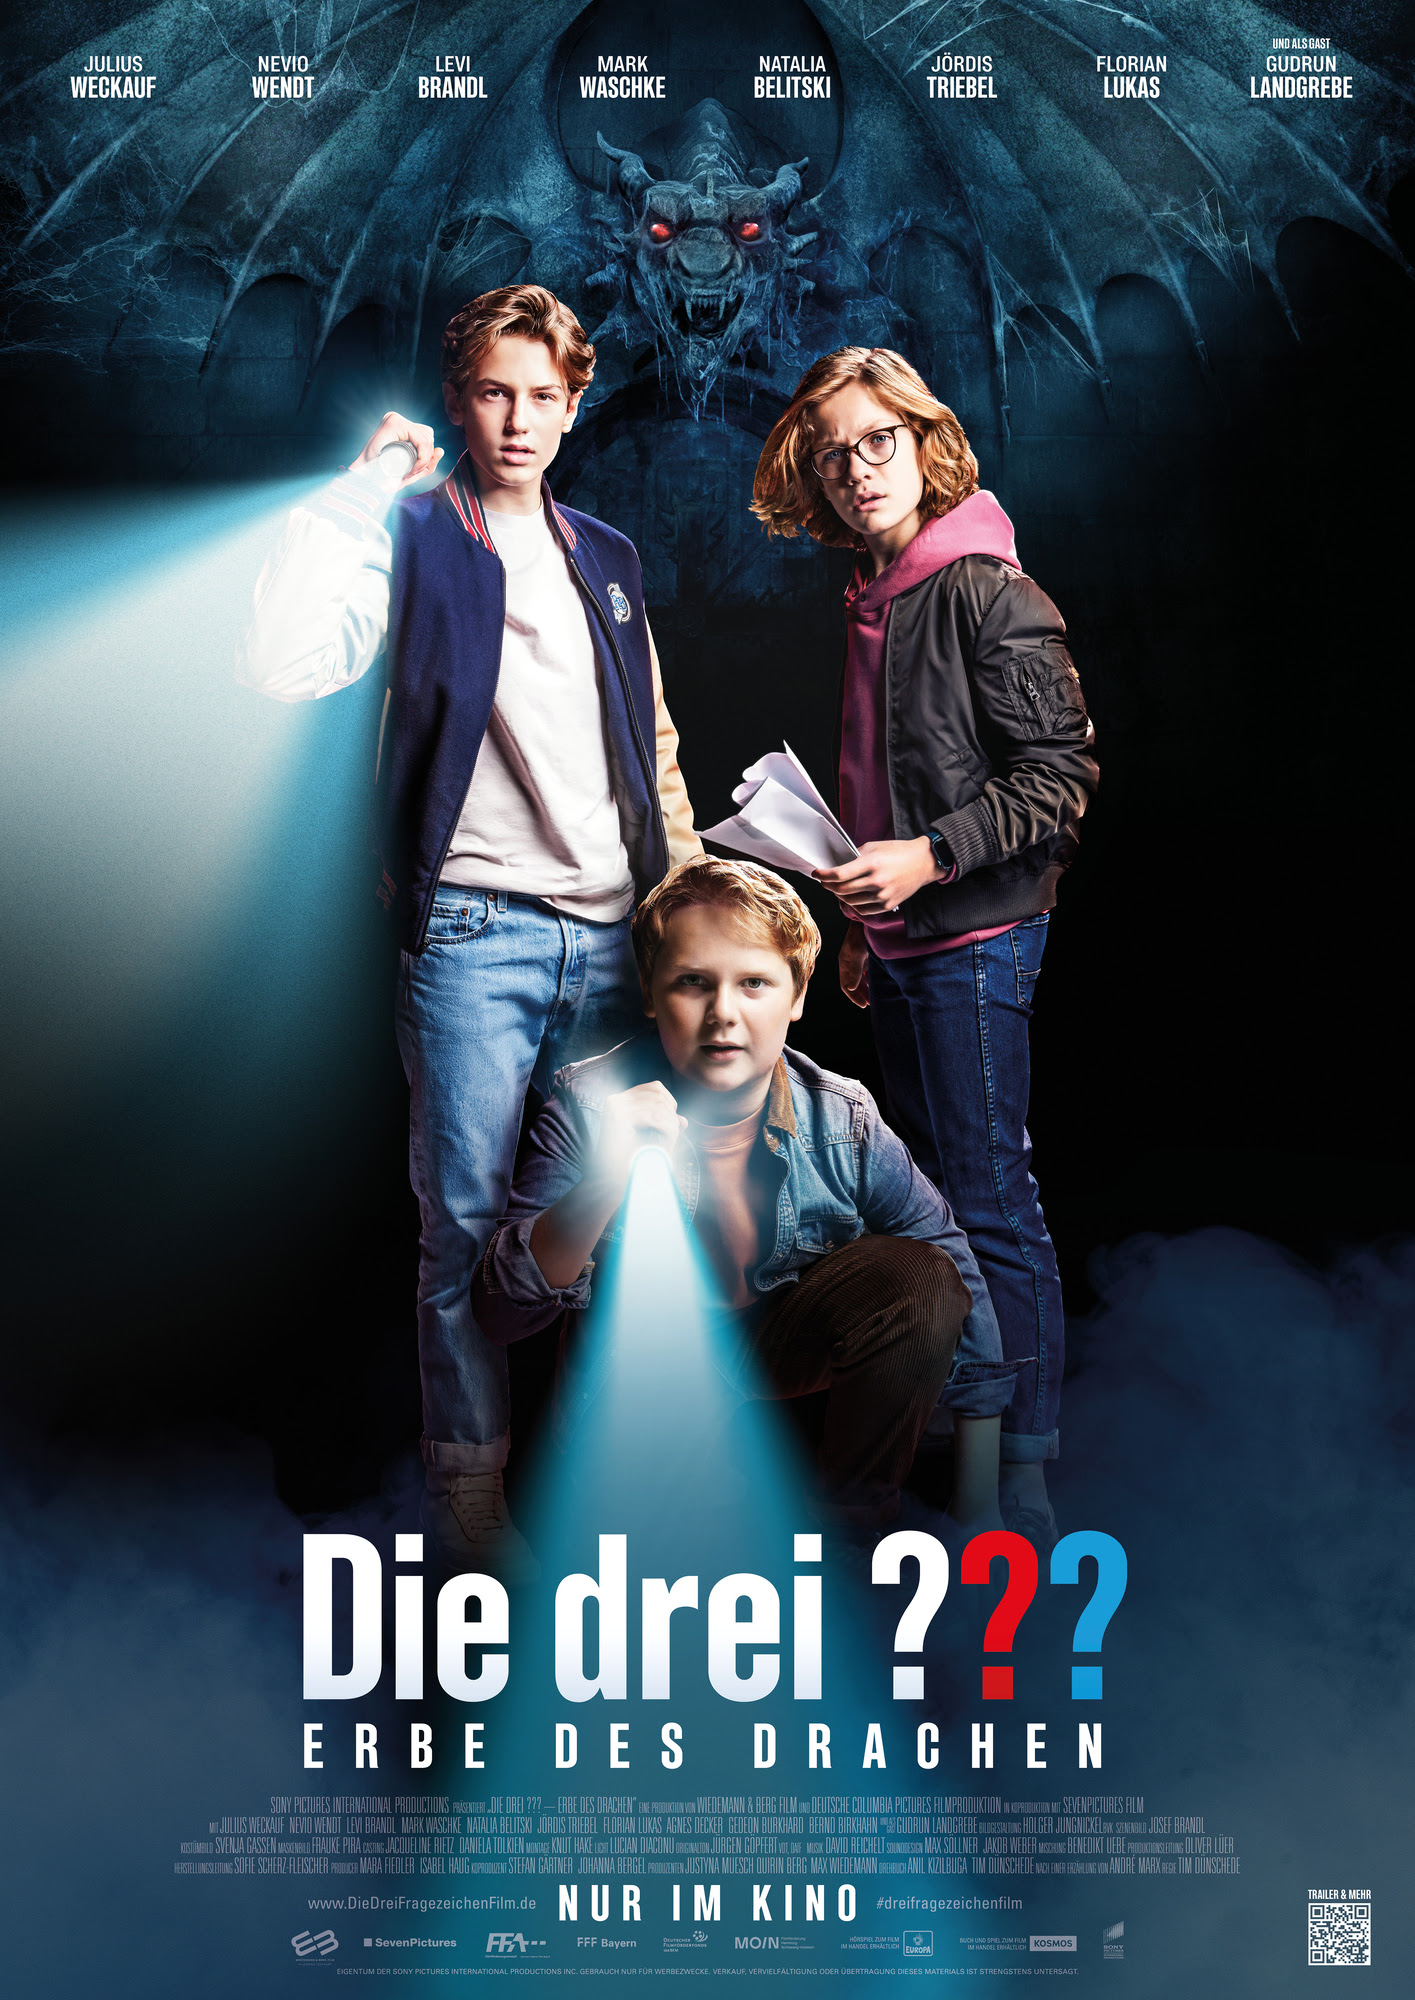 Trailer: "DIE DREI ??? – ERBE DES DRACHEN" 